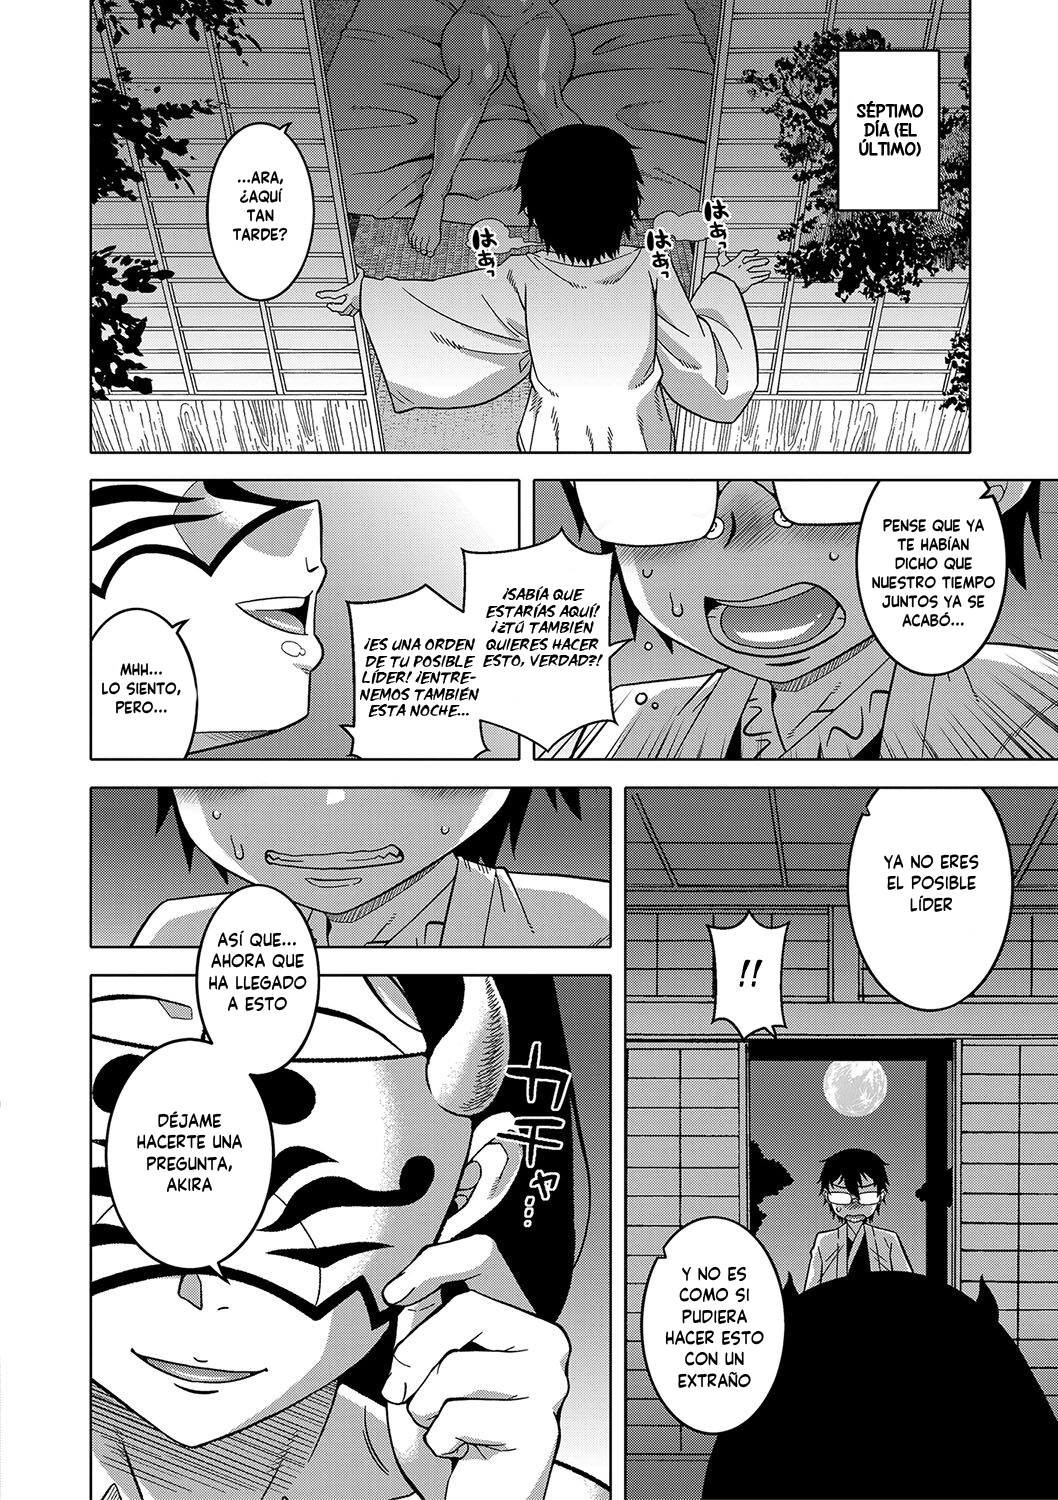 Manga KAMI-SAMA NO TSUKURIKATA-THE MAKING OF A CULT LEADER Chapter 1 image number 6